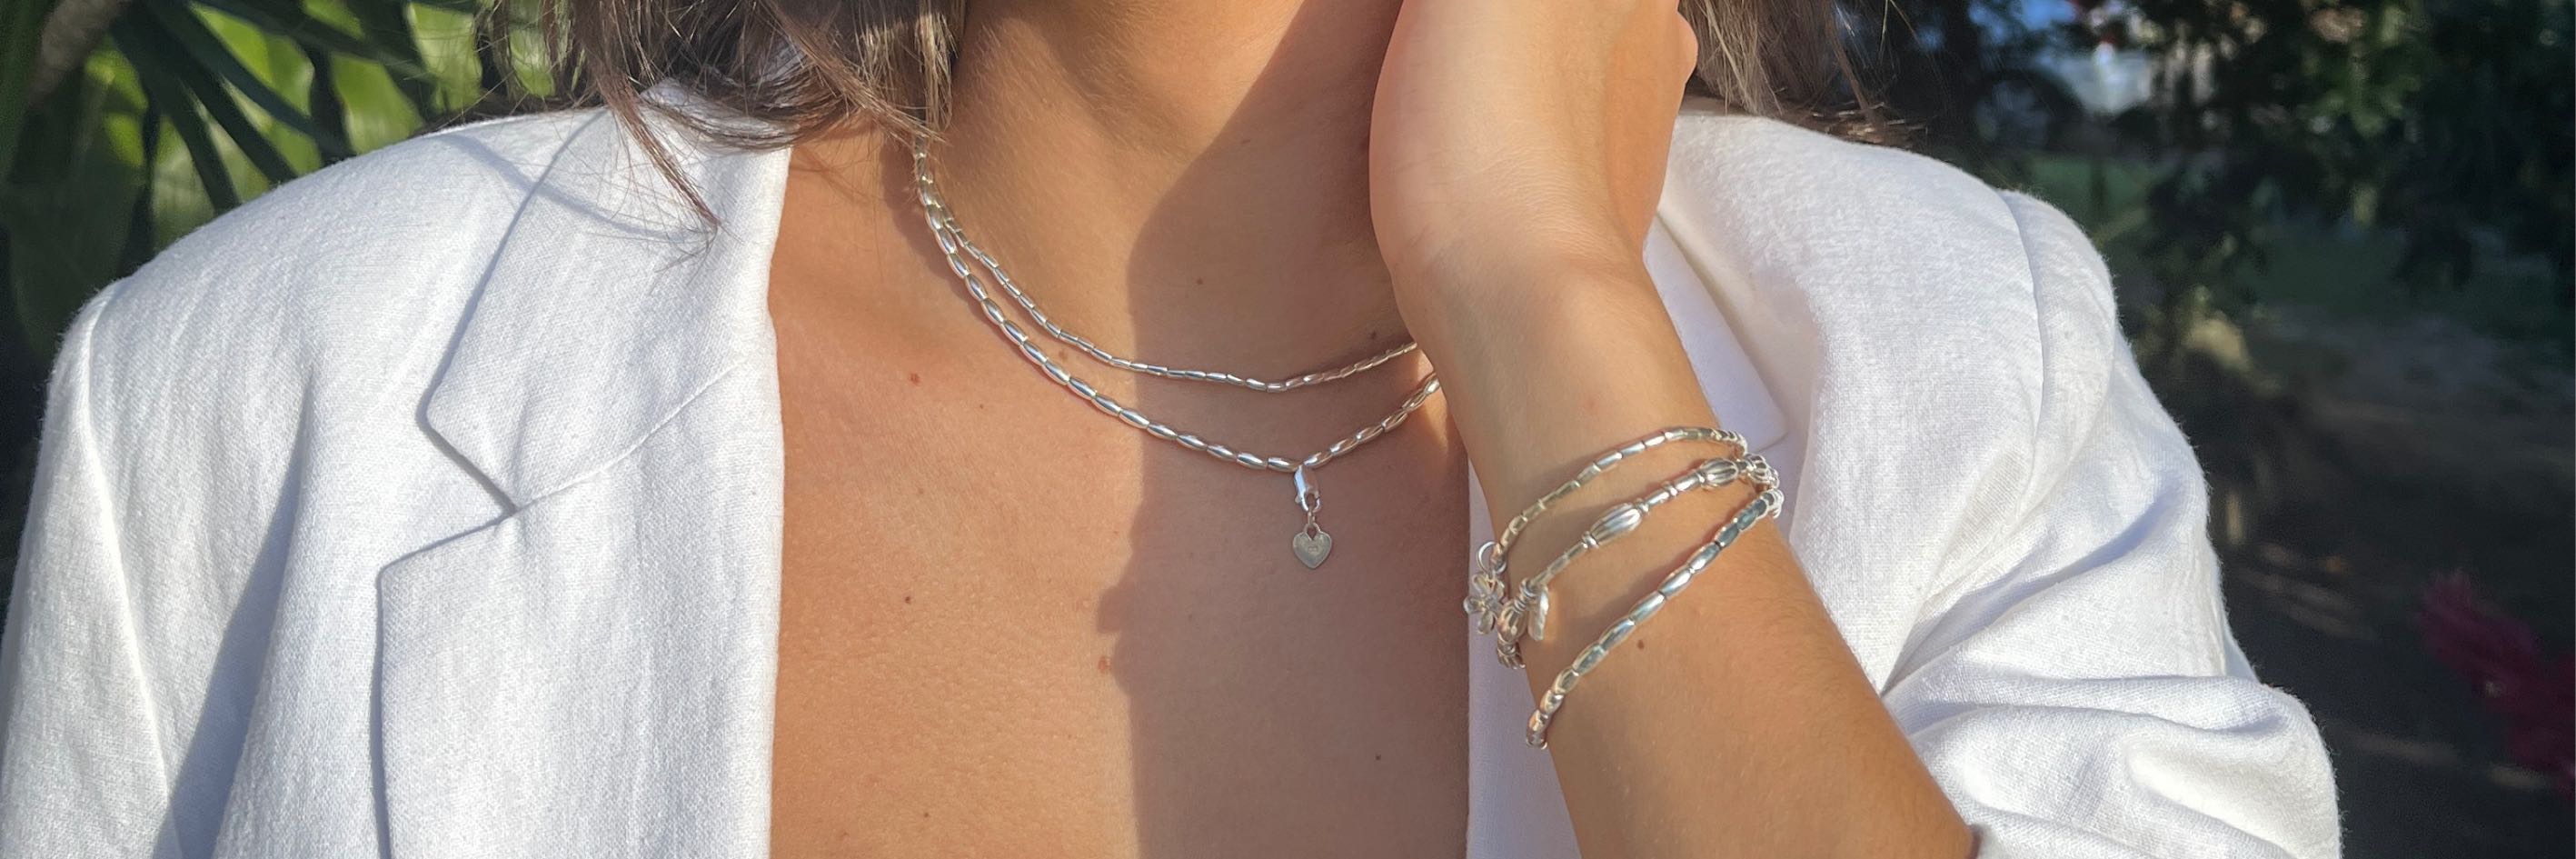 handmade sterling silver jewellery australia womens mens necklaces bracelets earrings oskye jewellery